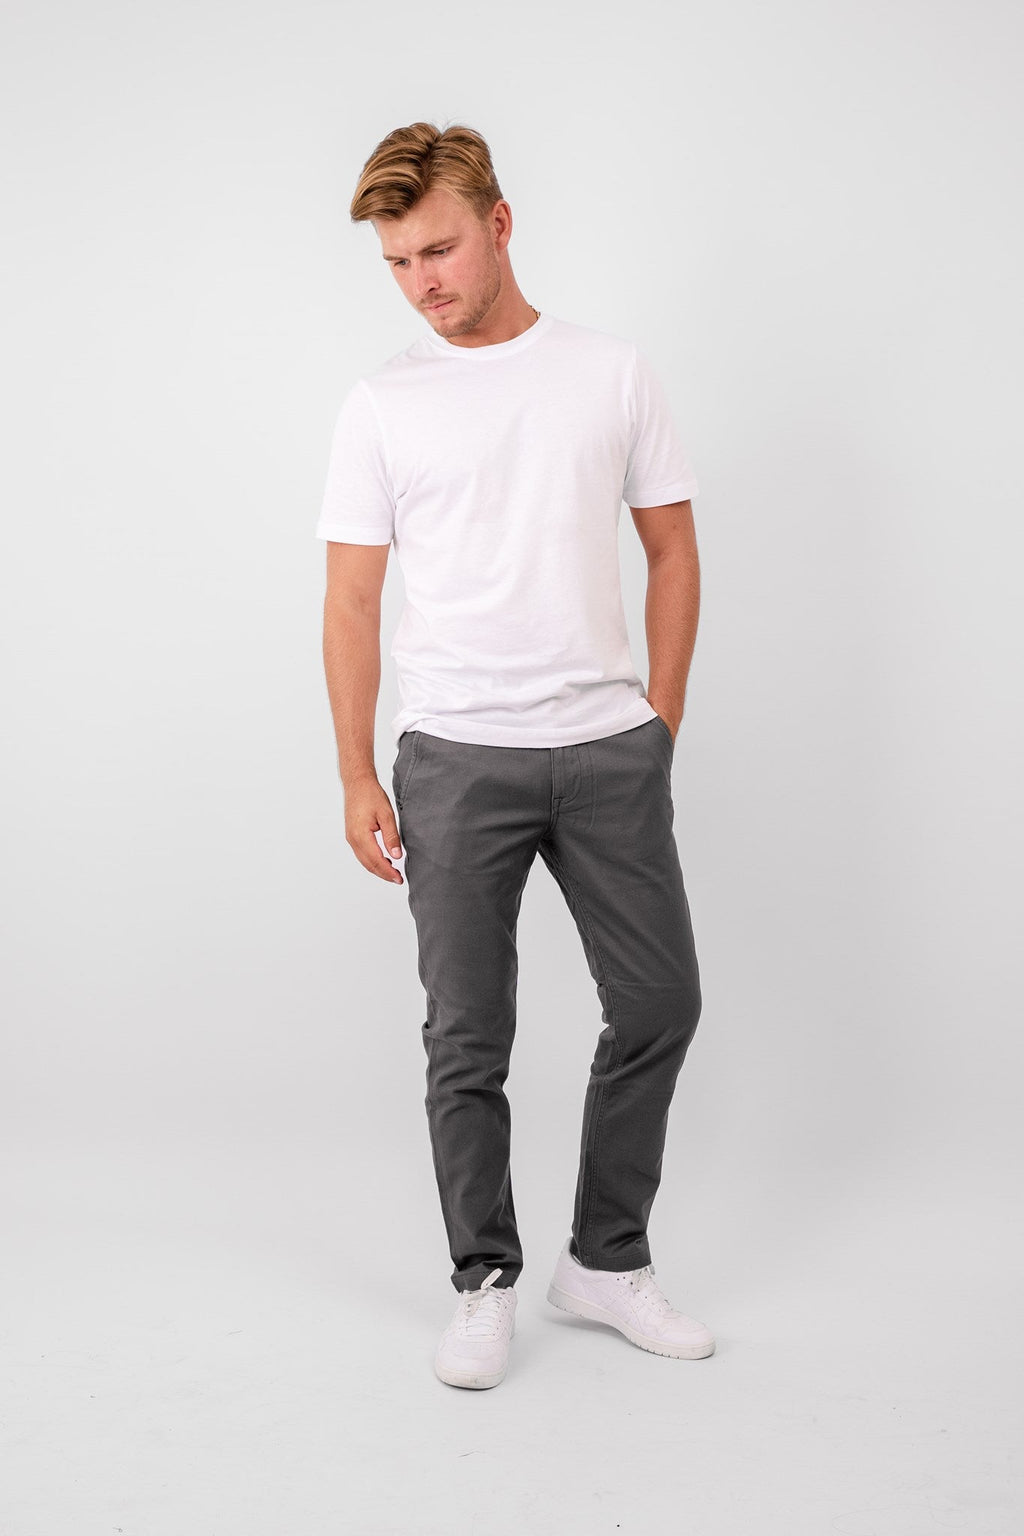 原始性能结构裤（常规） - 深灰色